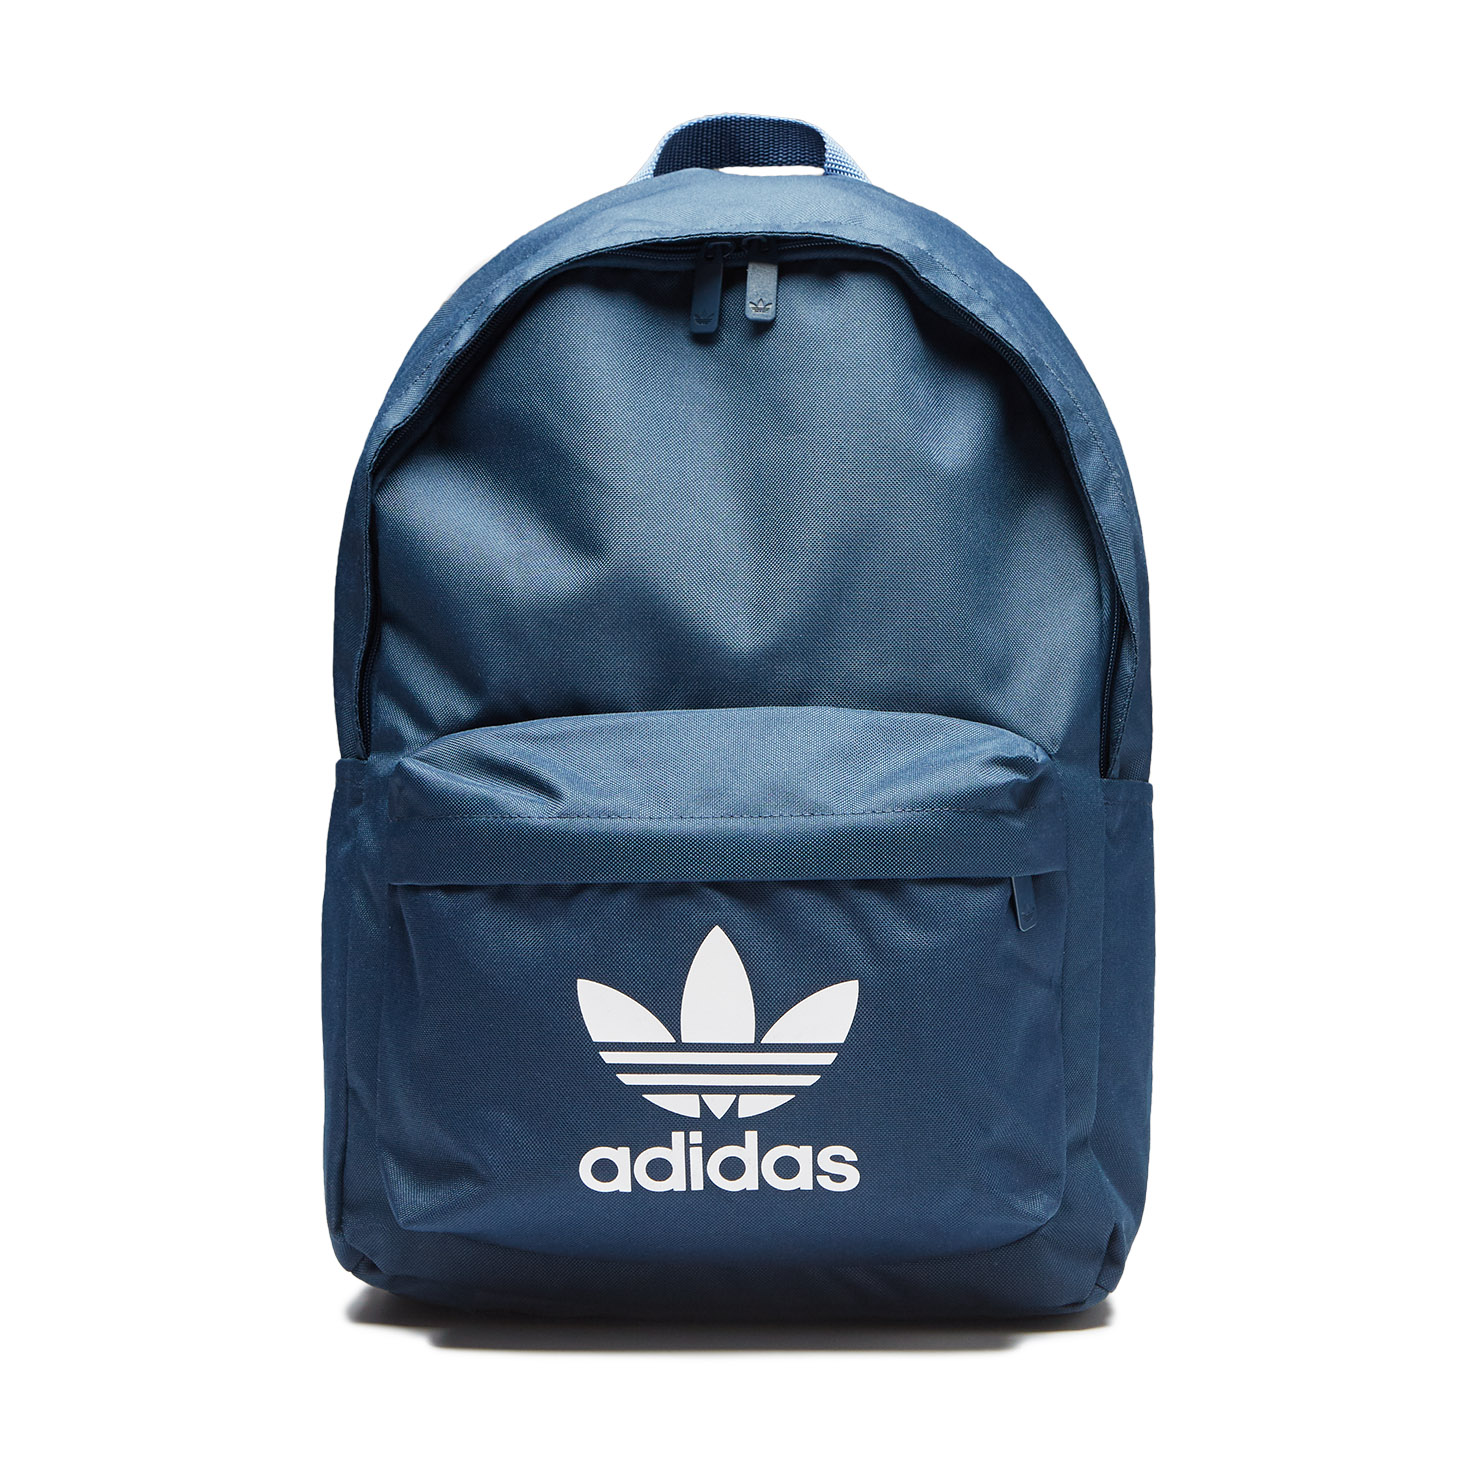 Рюкзак adidas синего цвета